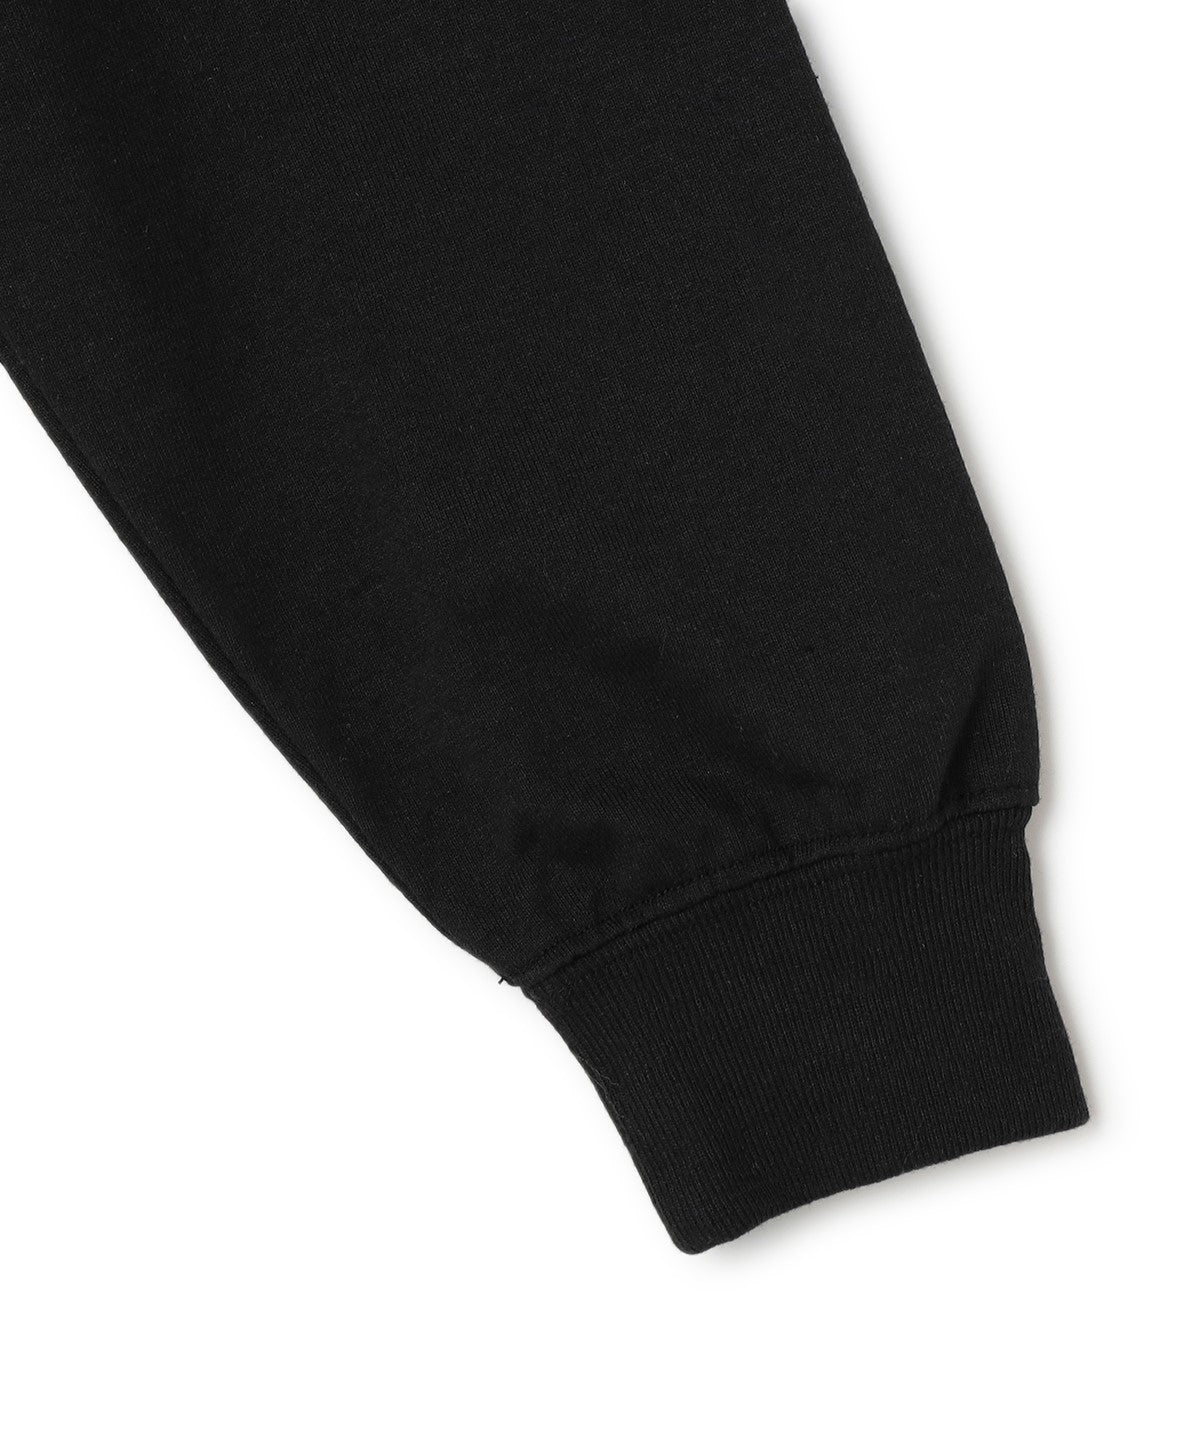 Long Sleeve Printed Pocket T-Shirts 013